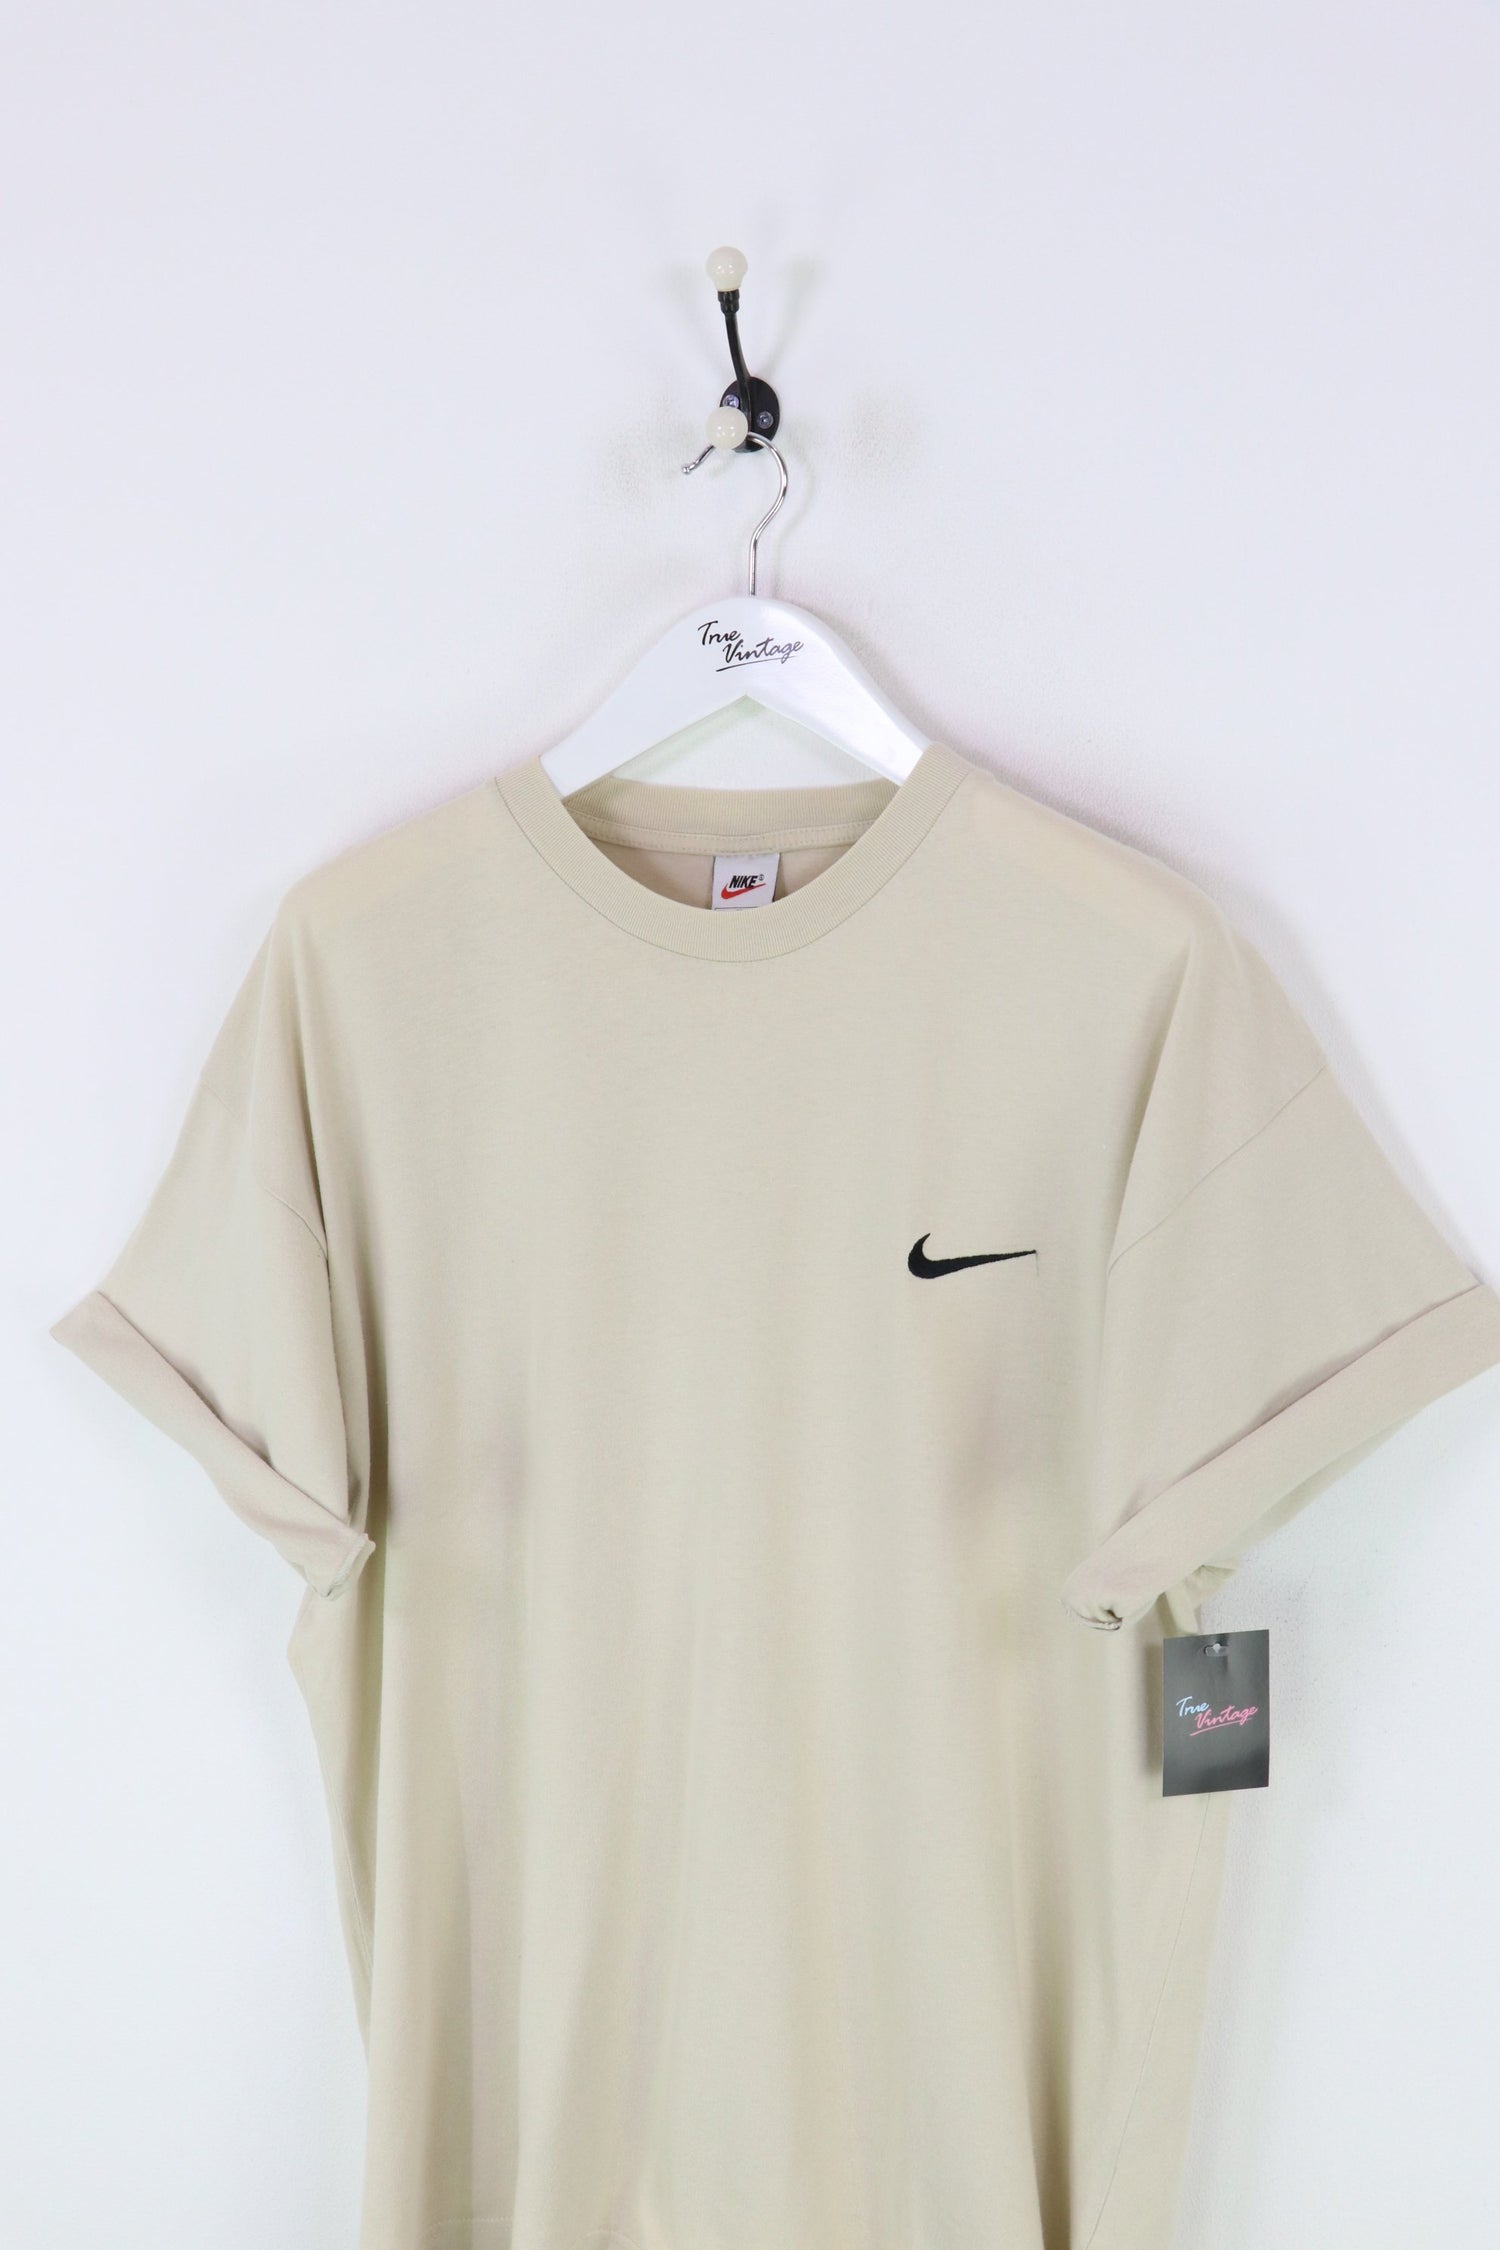 Nike T-shirt Beige XXL